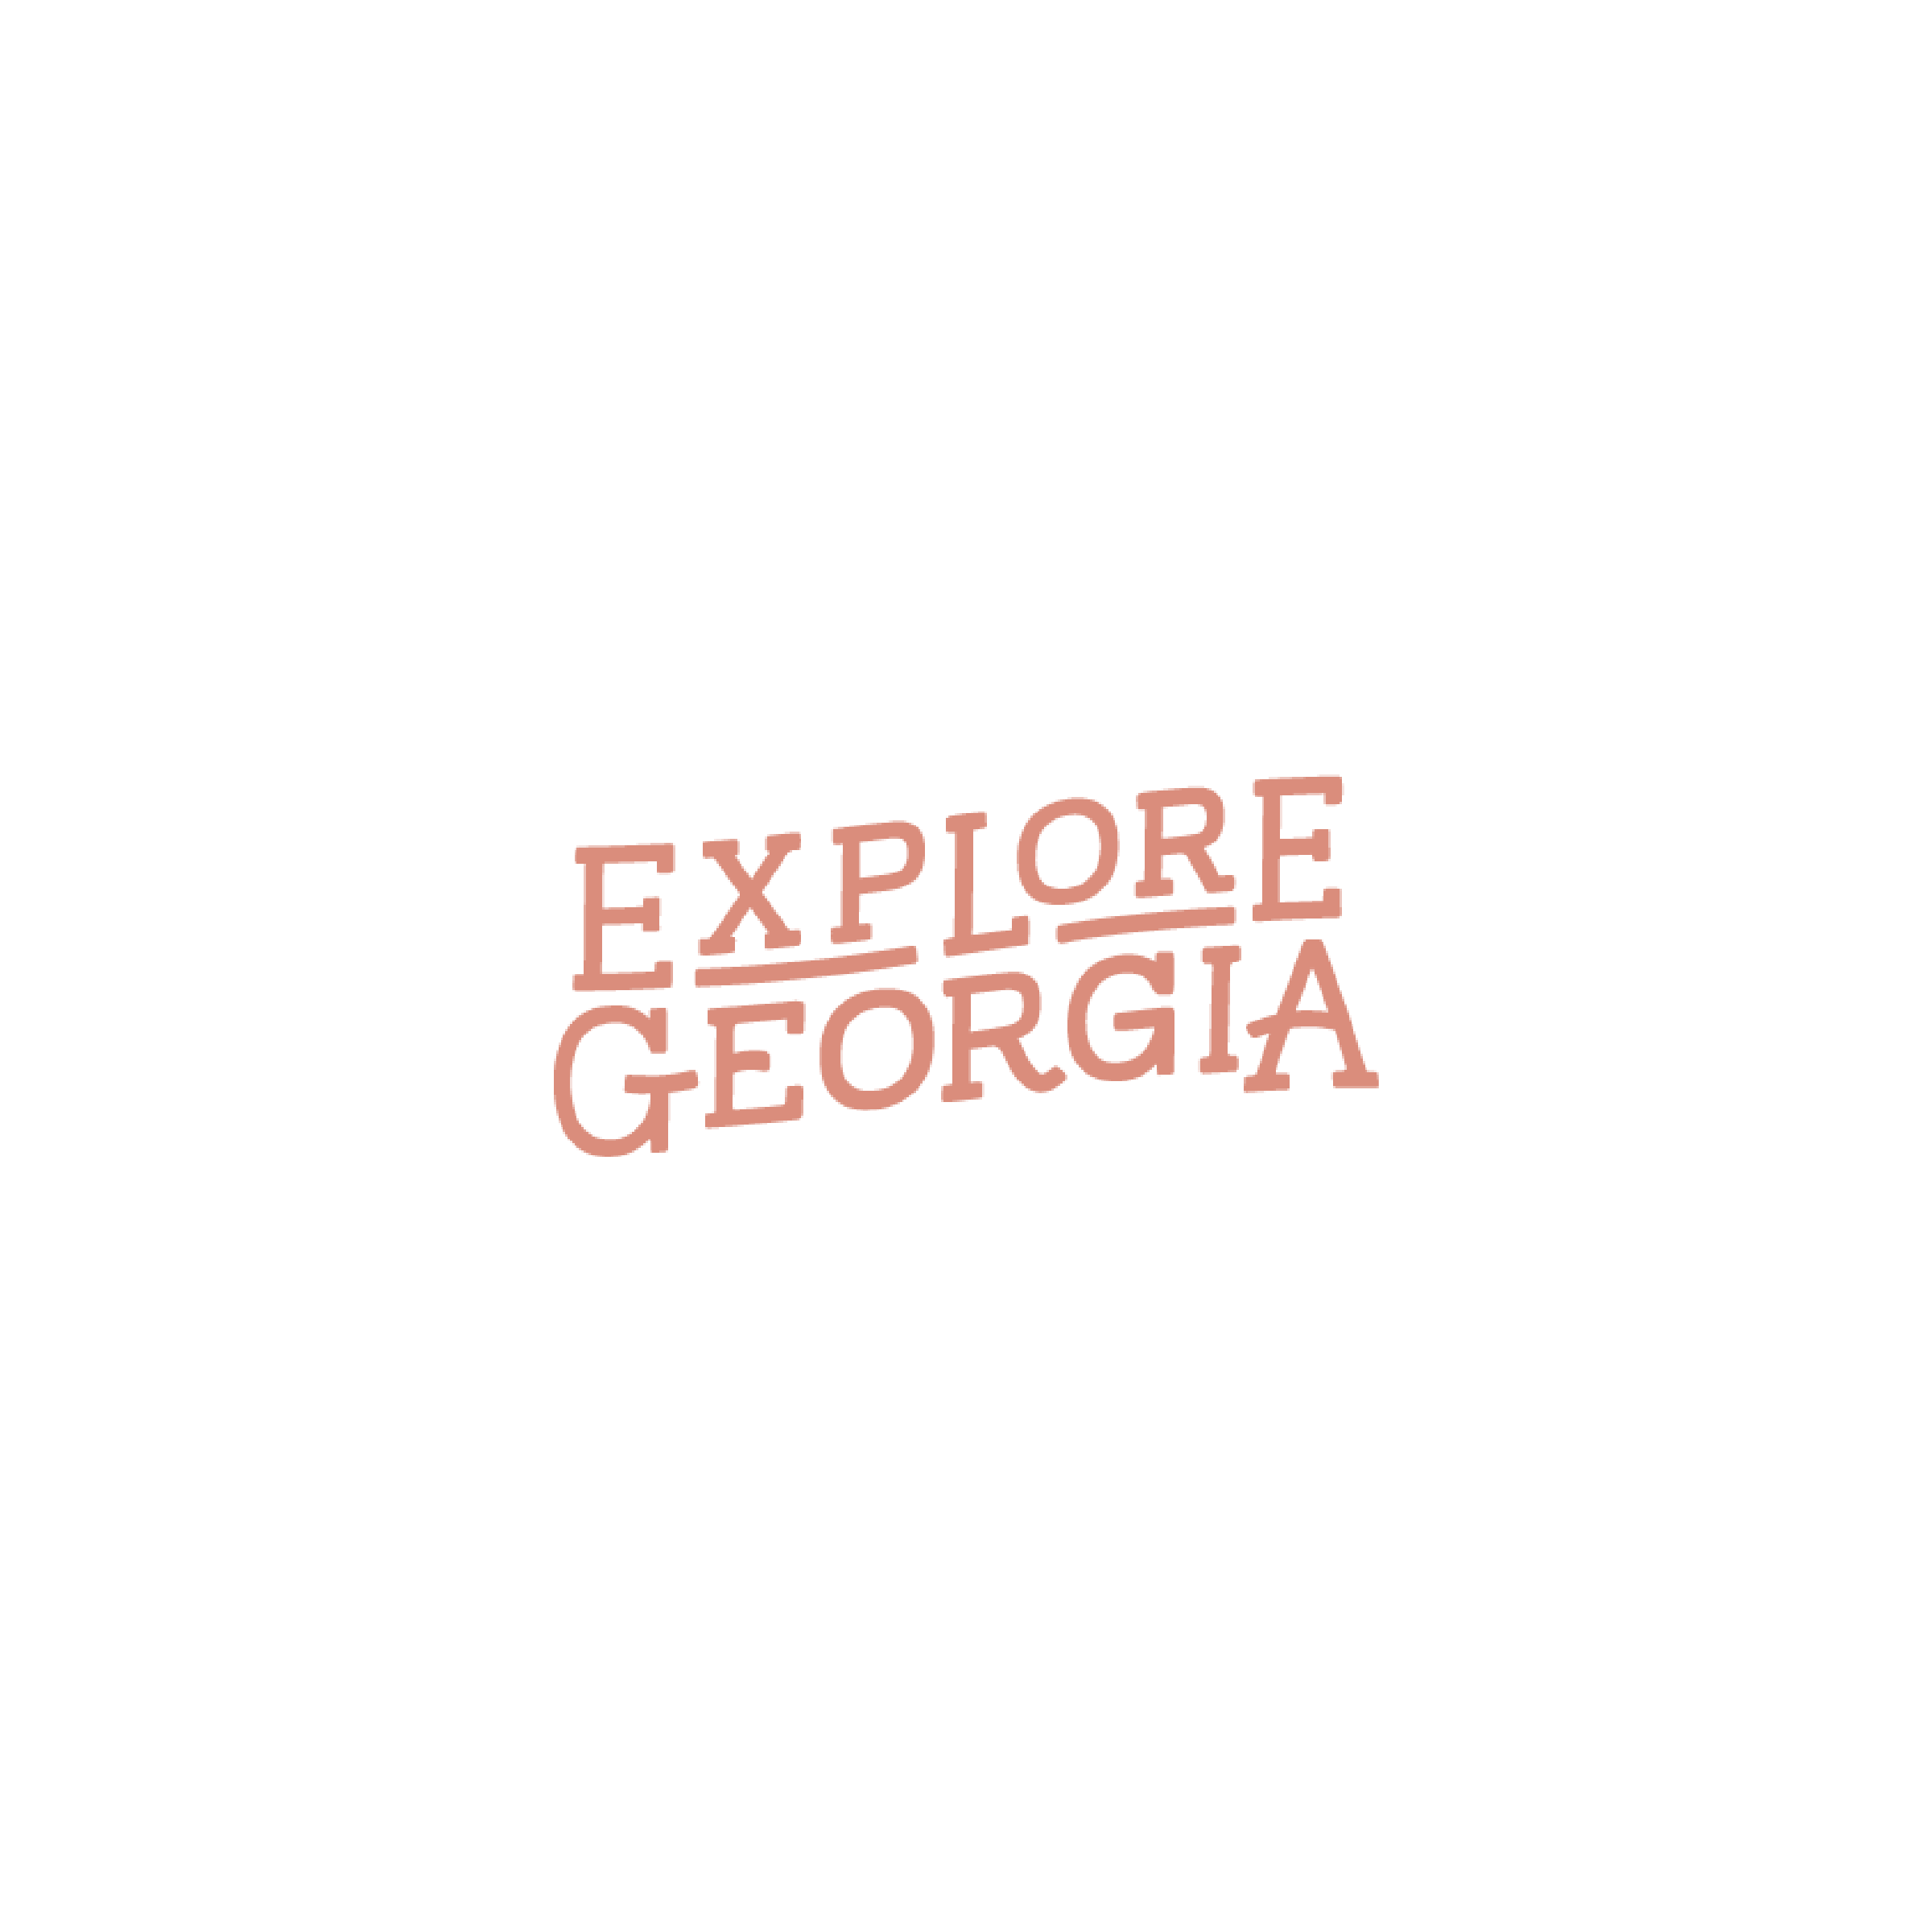 explore georgia